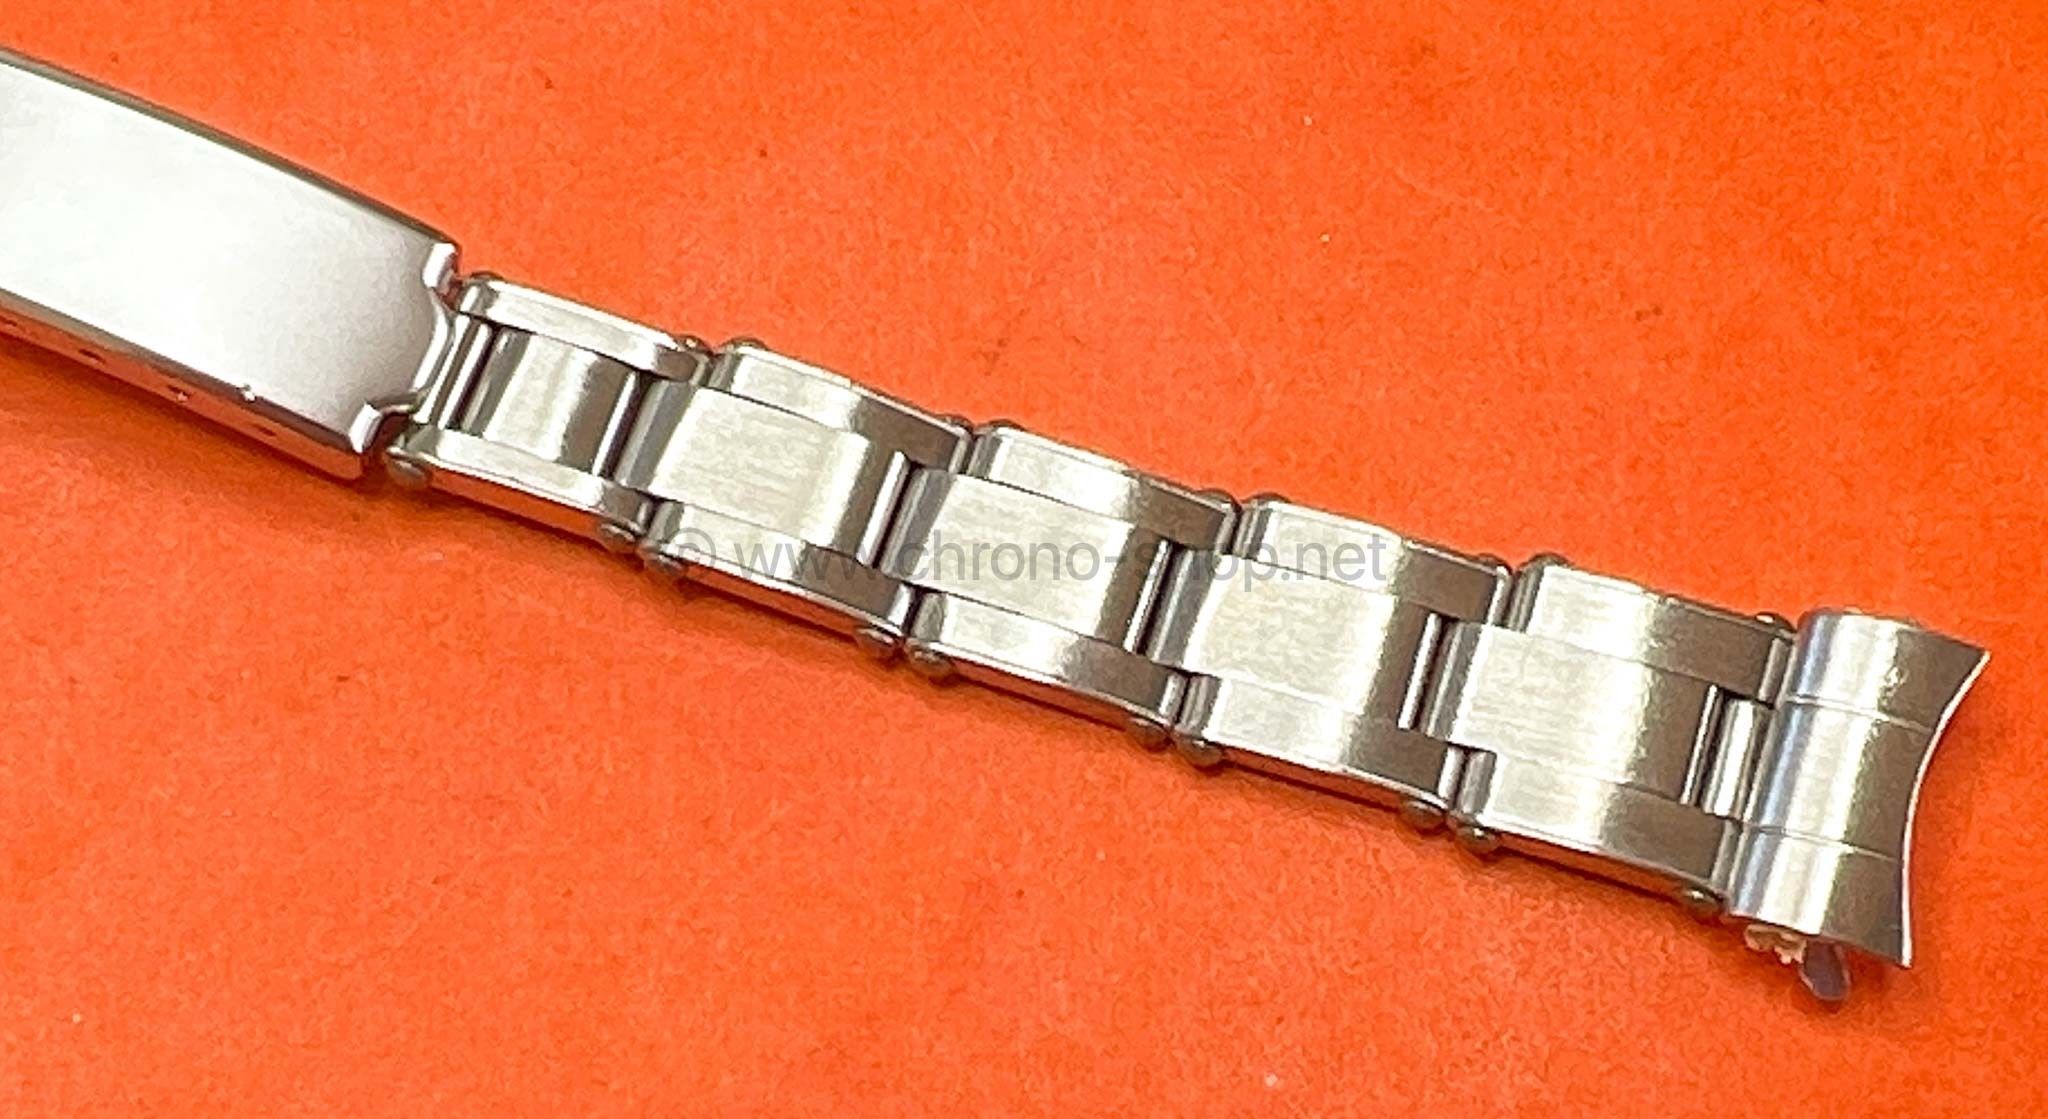 Accessoire Montres Bracelet Vintage type Rolex Dames ref 7204 maillons rivets 12mm